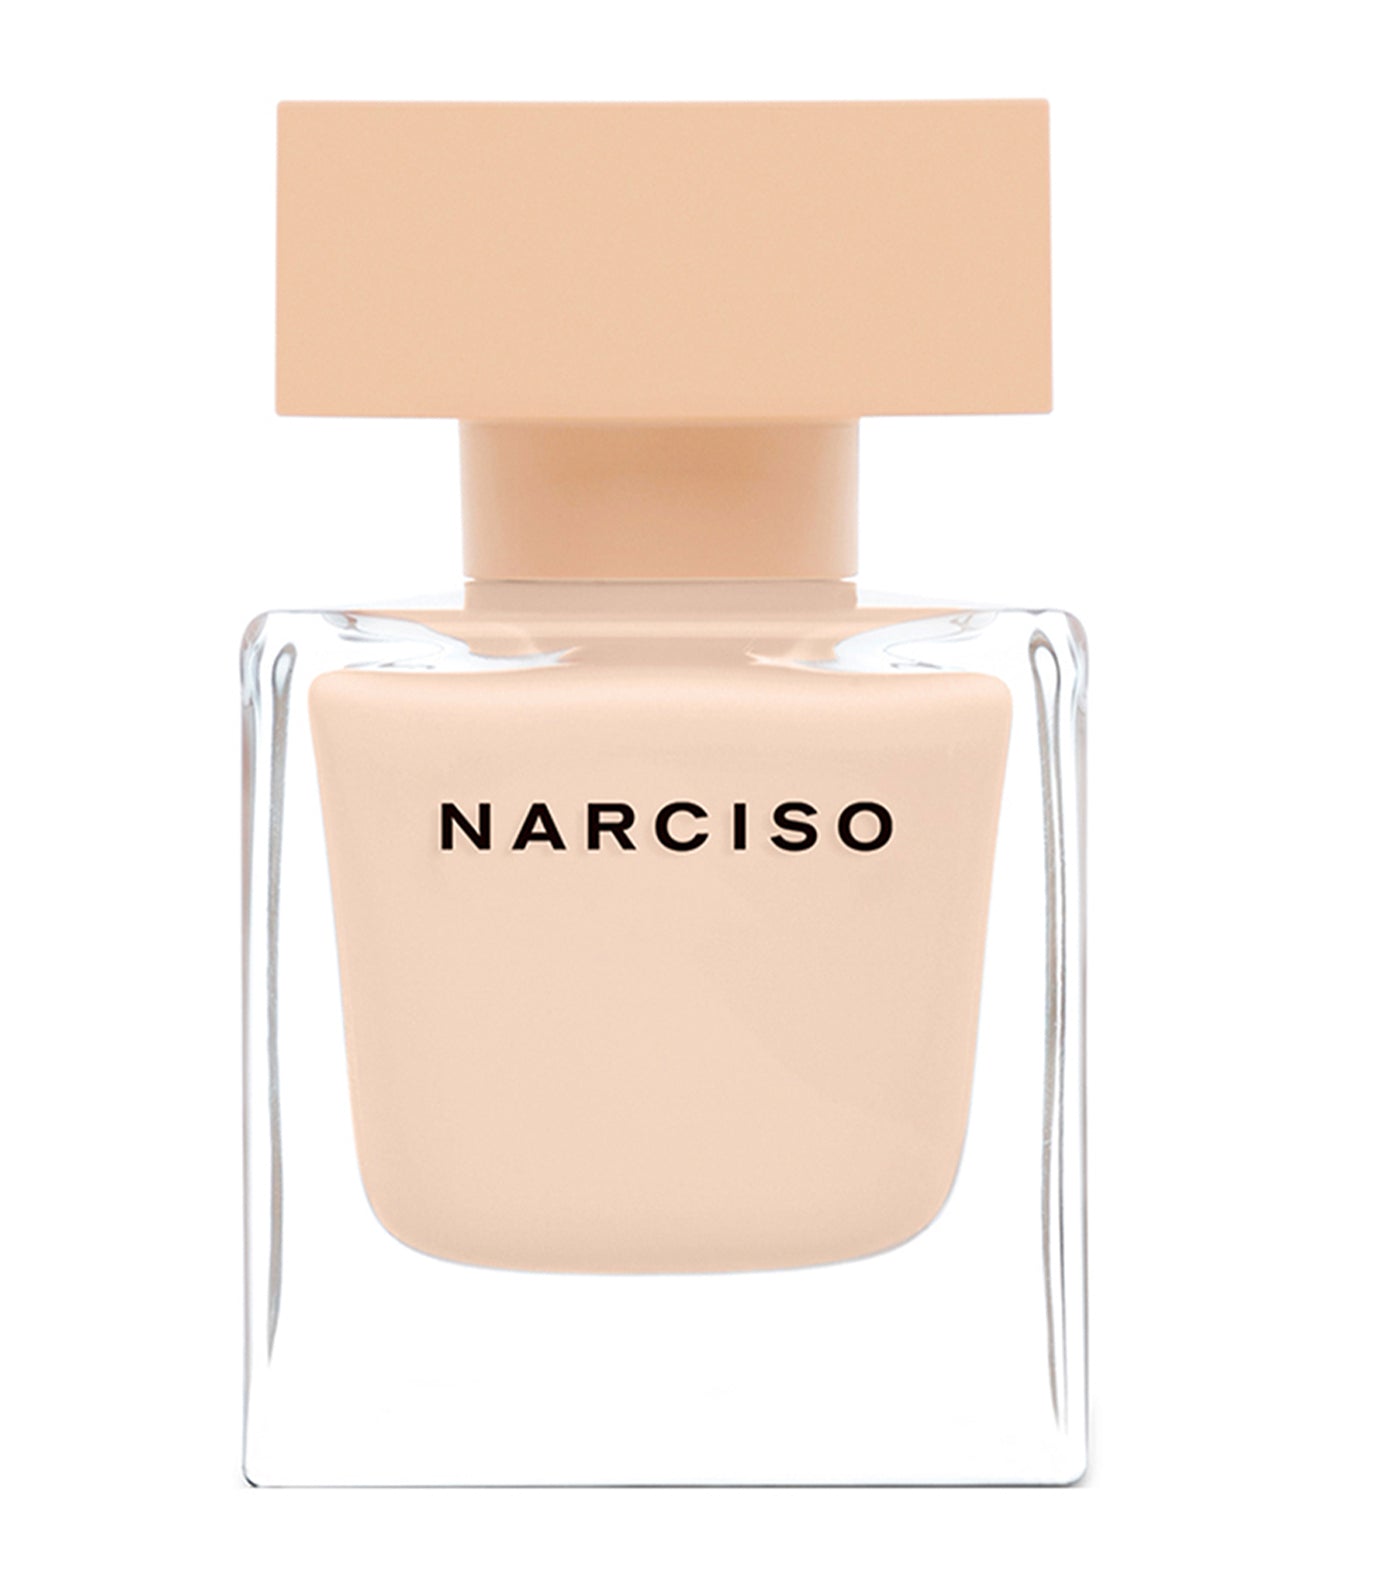 Free NARCISO Eau de Parfum Poudrée 30ml